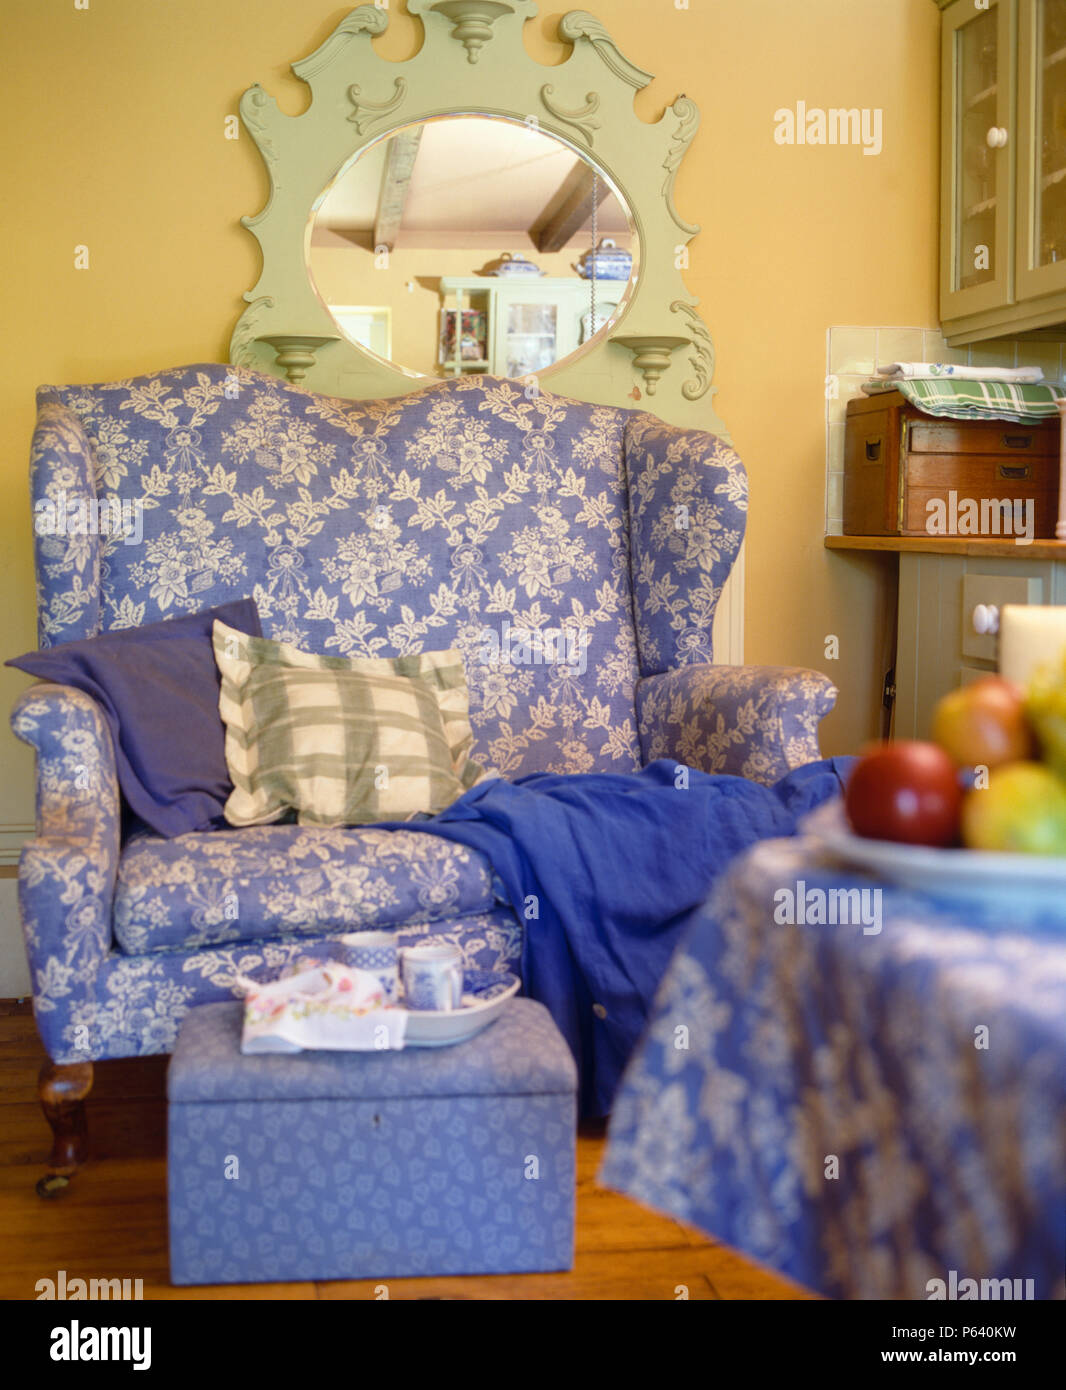 Spiegel über kleine blau + Weiß geblümten Sofa in Ferienhaus Wohnzimmer mit  Cups auf gepolsterten Hocker lackiert Stockfotografie - Alamy